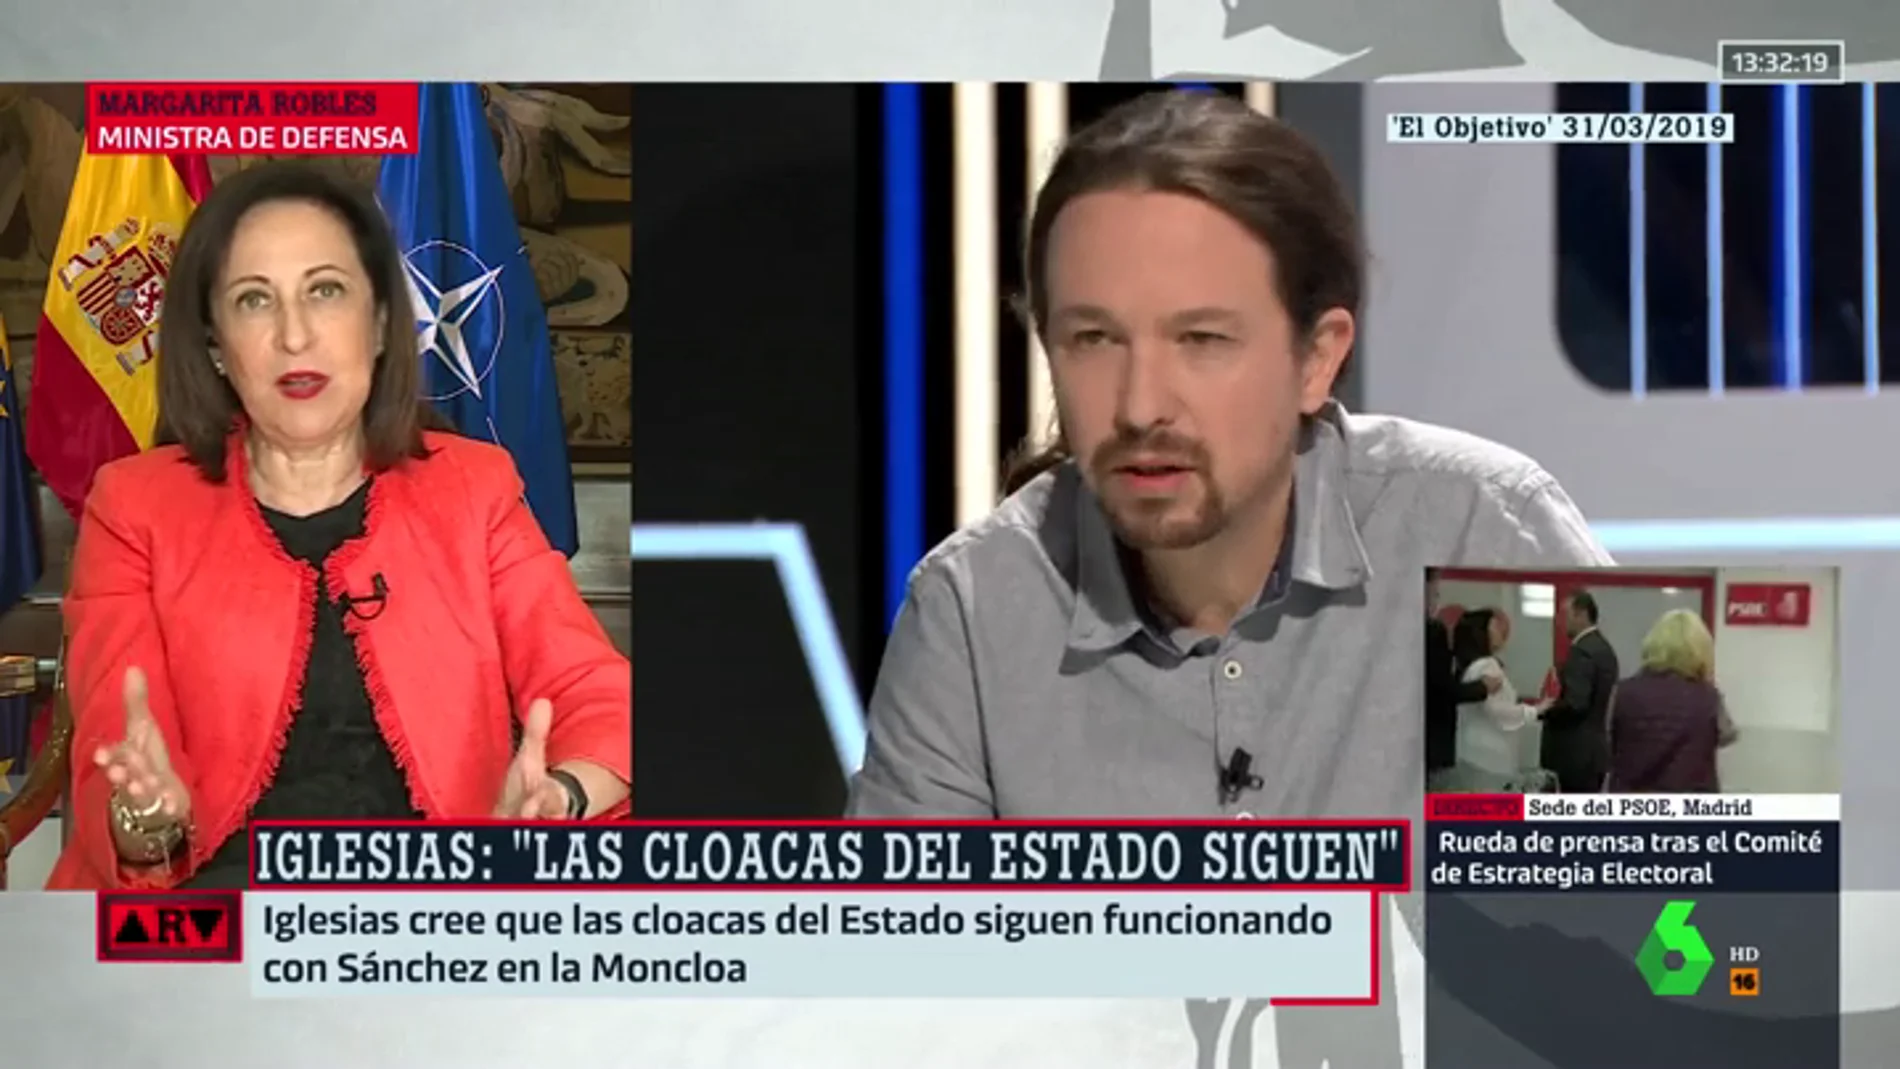 El mensaje de Margarita Robles a Pablo Iglesias sobre las cloacas del Estado